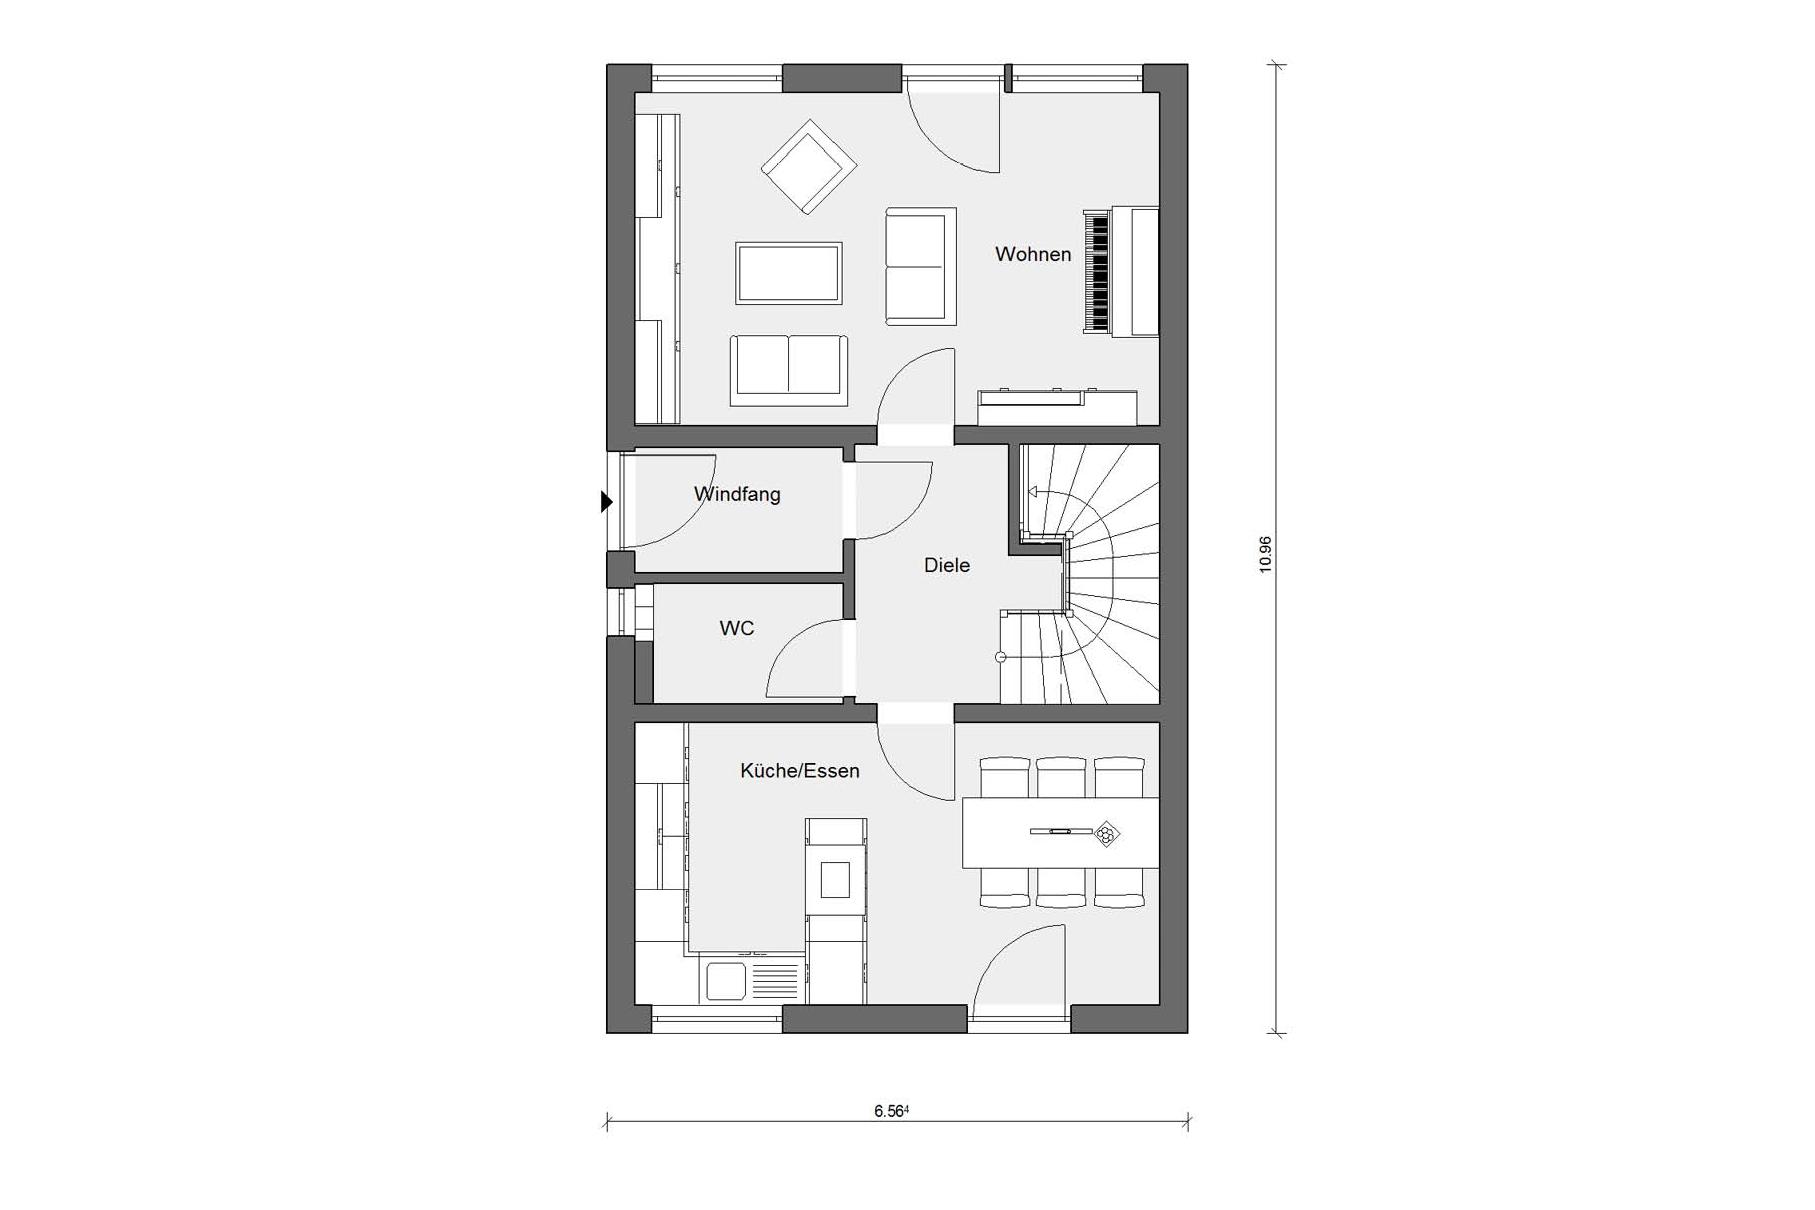 Floor plan ground floor E 20-116.1 chain house